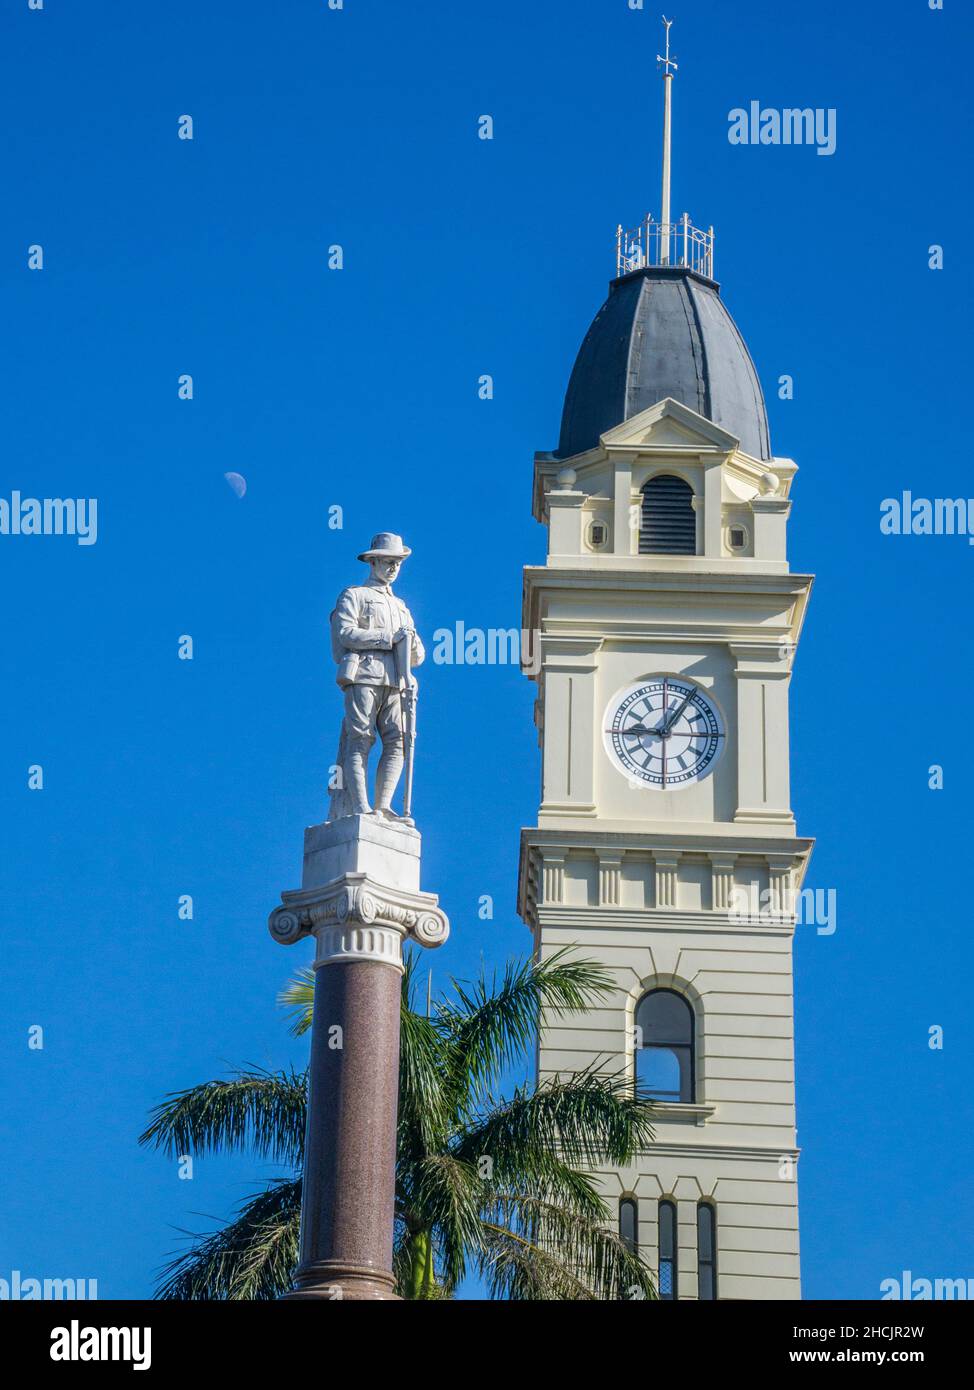 La histórica oficina de correos de Bundaburg, de estilo italiano tardío, cuenta con la icónica torre del reloj de 6 pisos y el monumento conmemorativo de la guerra de Bundaberg con mármol Foto de stock